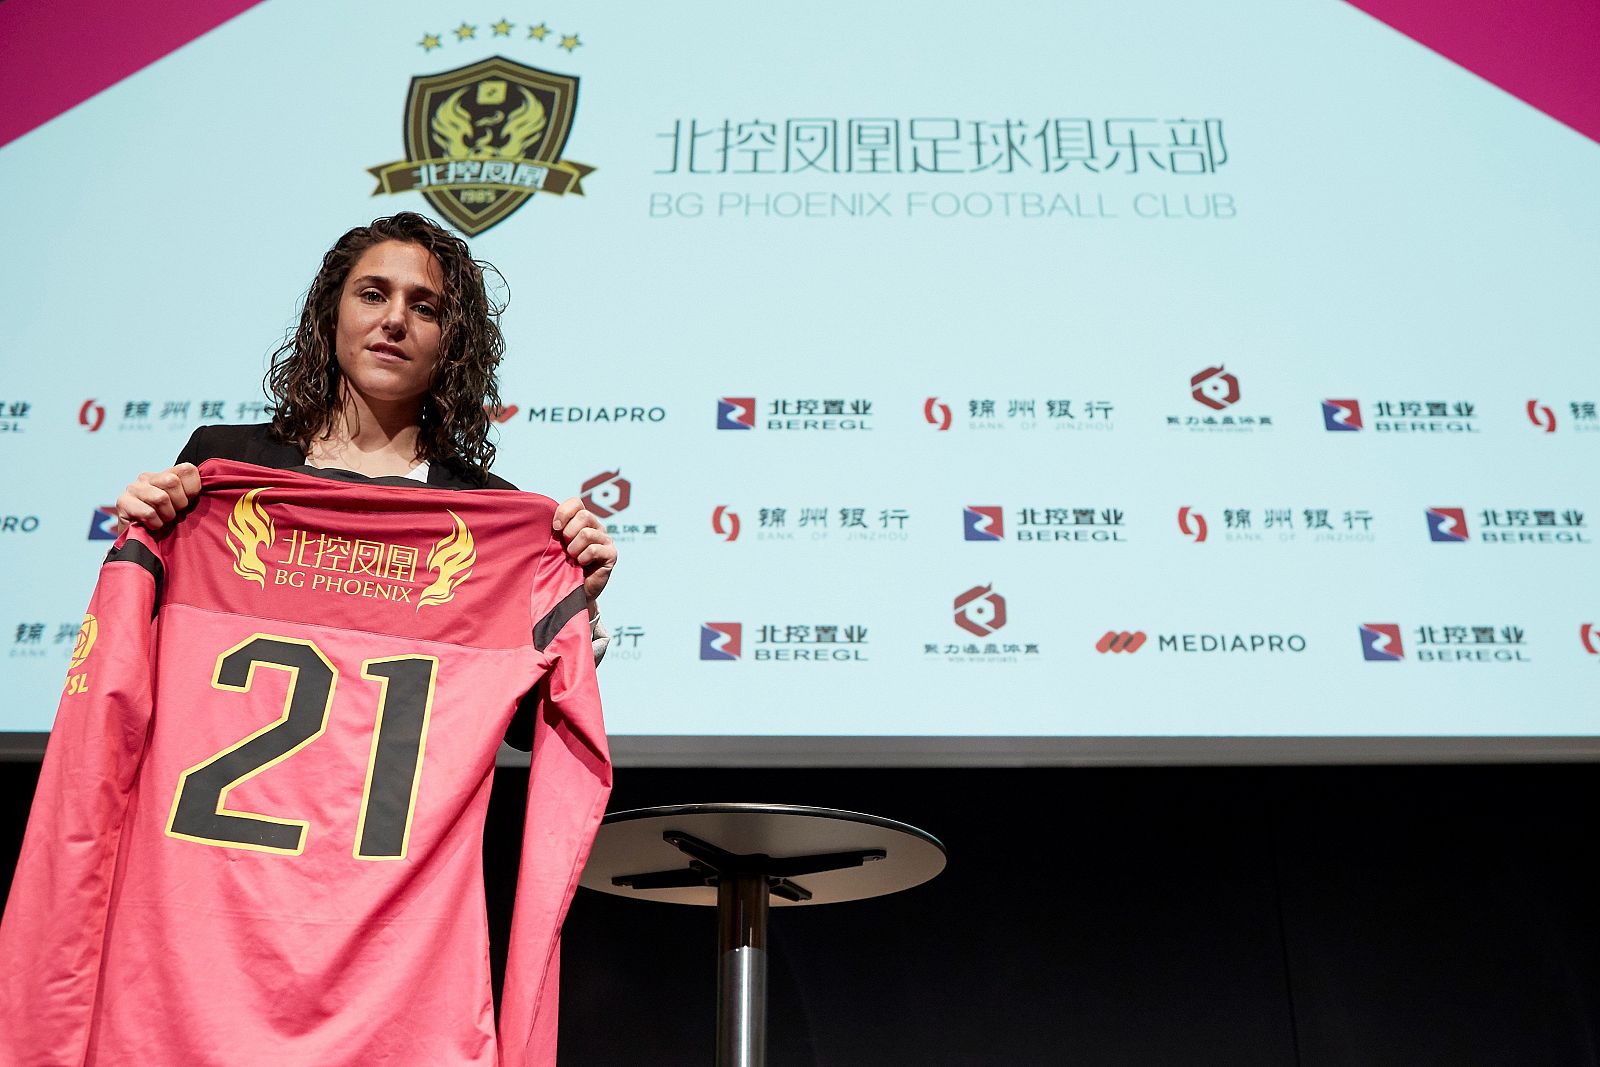 La futbolista española Verónica Boquete ha sido presentada en Barcelona.